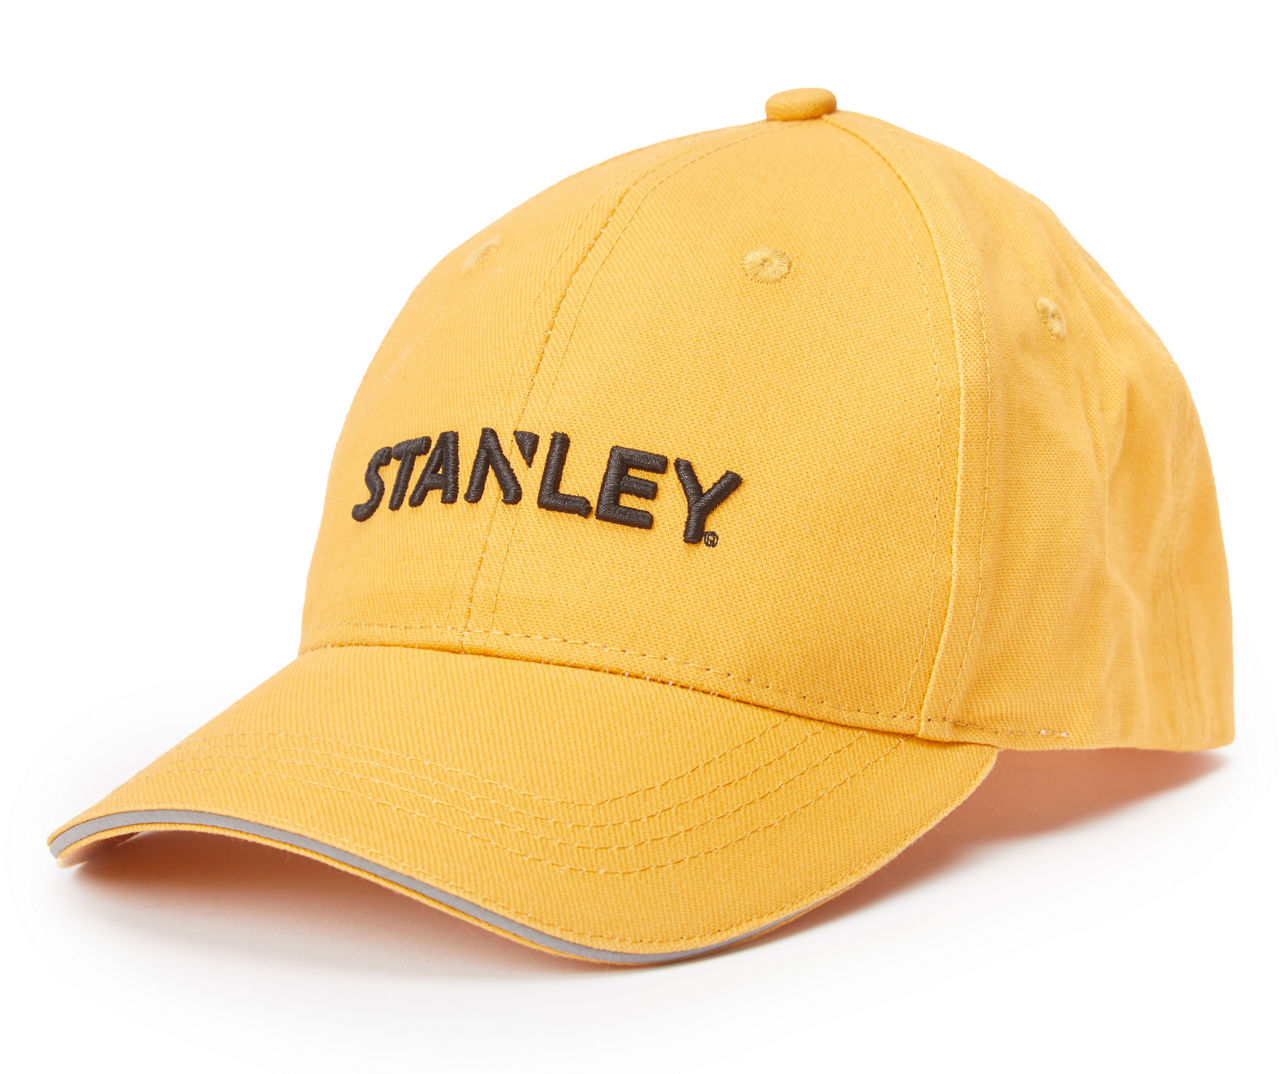 STANLEY CAP GOLD